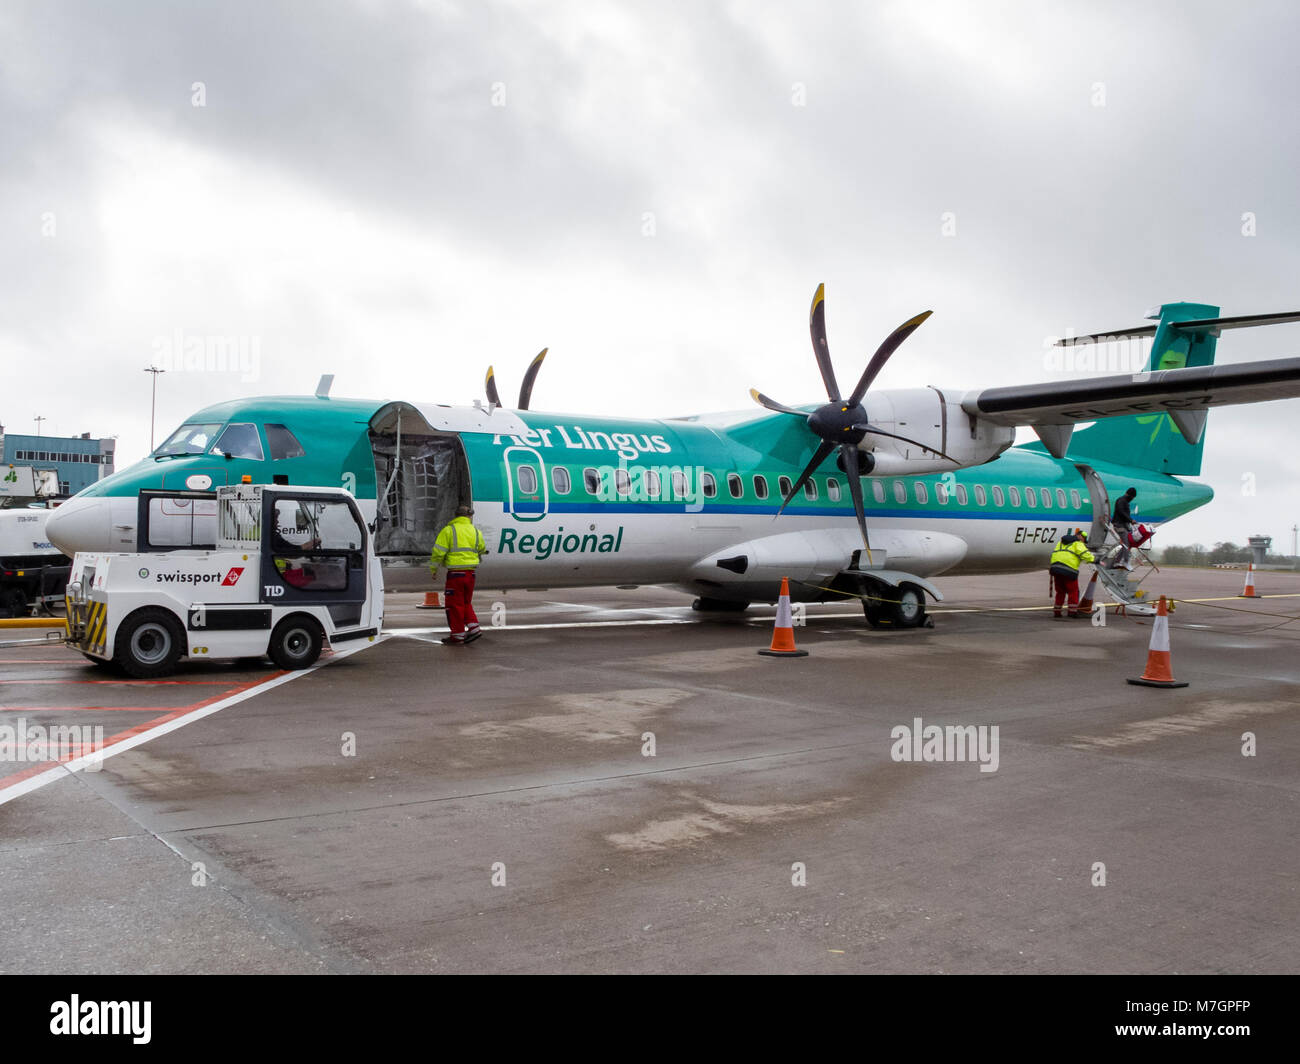 Stobart Air regionale compagnia aerea irlandese ATR 72-600 twin elica aerei operativi Aer Lingus voli regionali essendo caricato con i passeggeri e il bagaglio Foto Stock